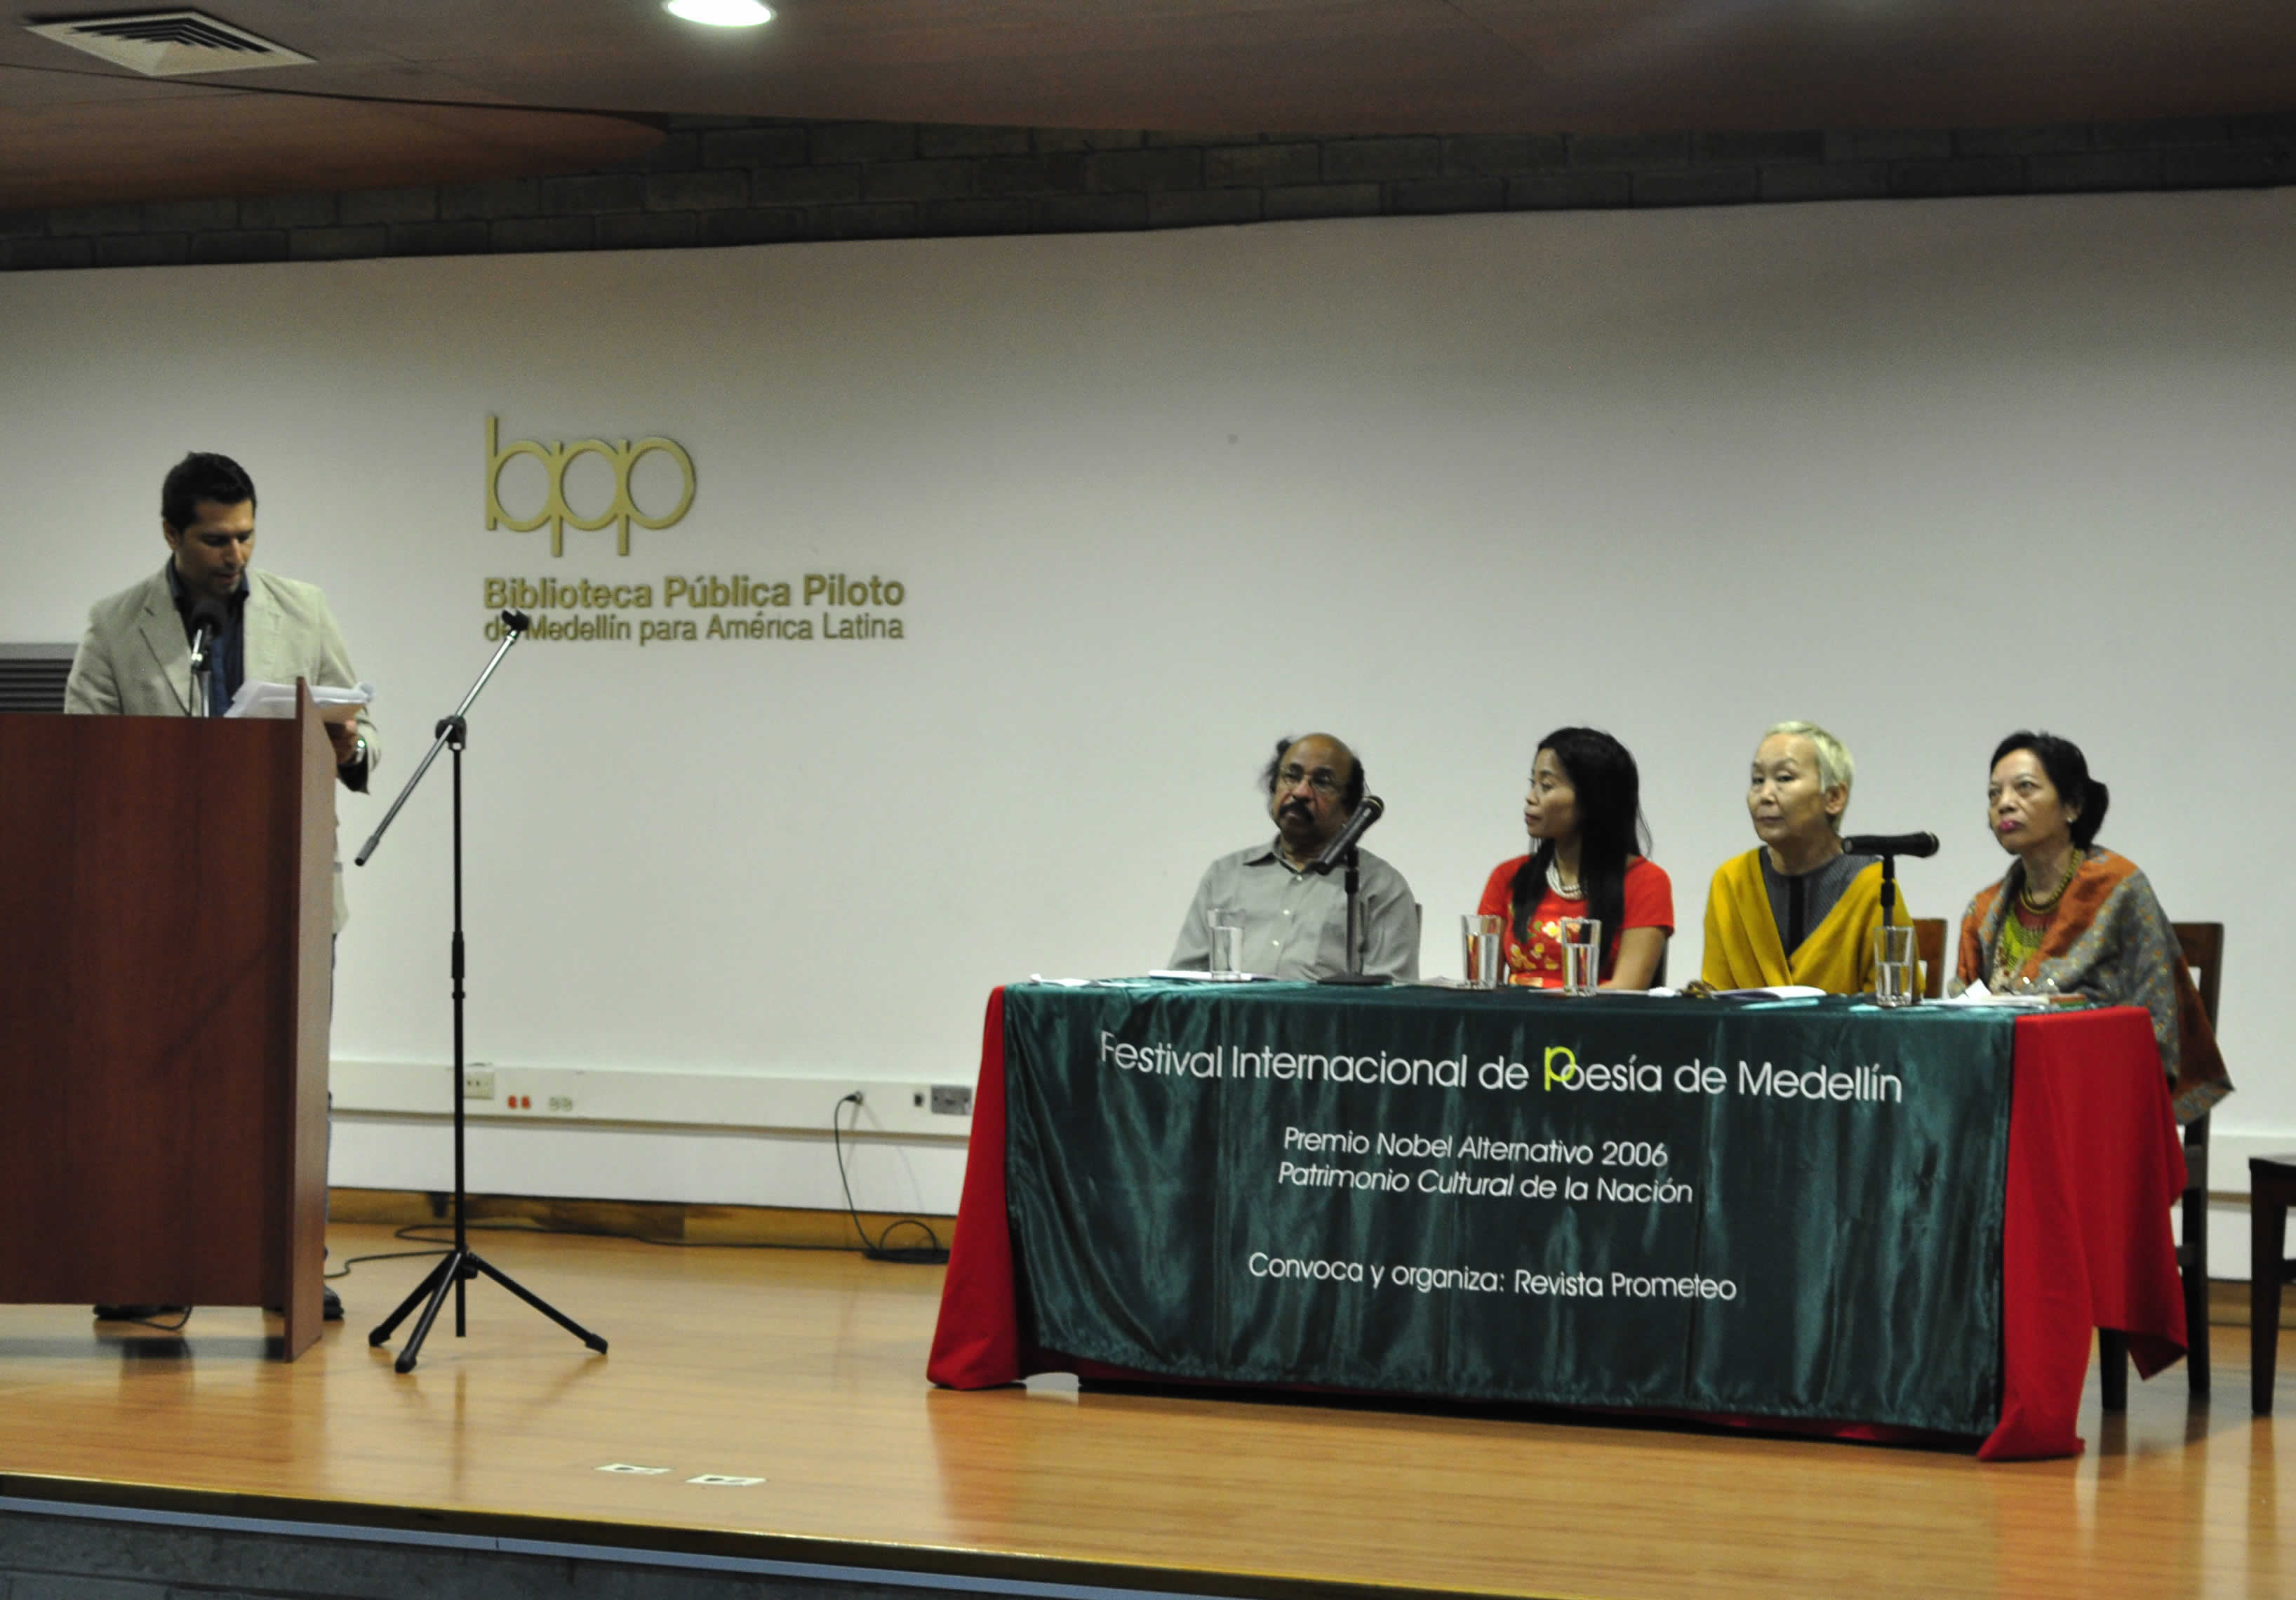 El el micrófono David Almario, presentador. En la mesa de lectura, de izquierda a derecha: K. Satchidanandan (India), Nguyen Phan Que Mai (Vietnam), Sainkho Namtchylak (Tuva), Marra PL. Lanot (Filipinas).